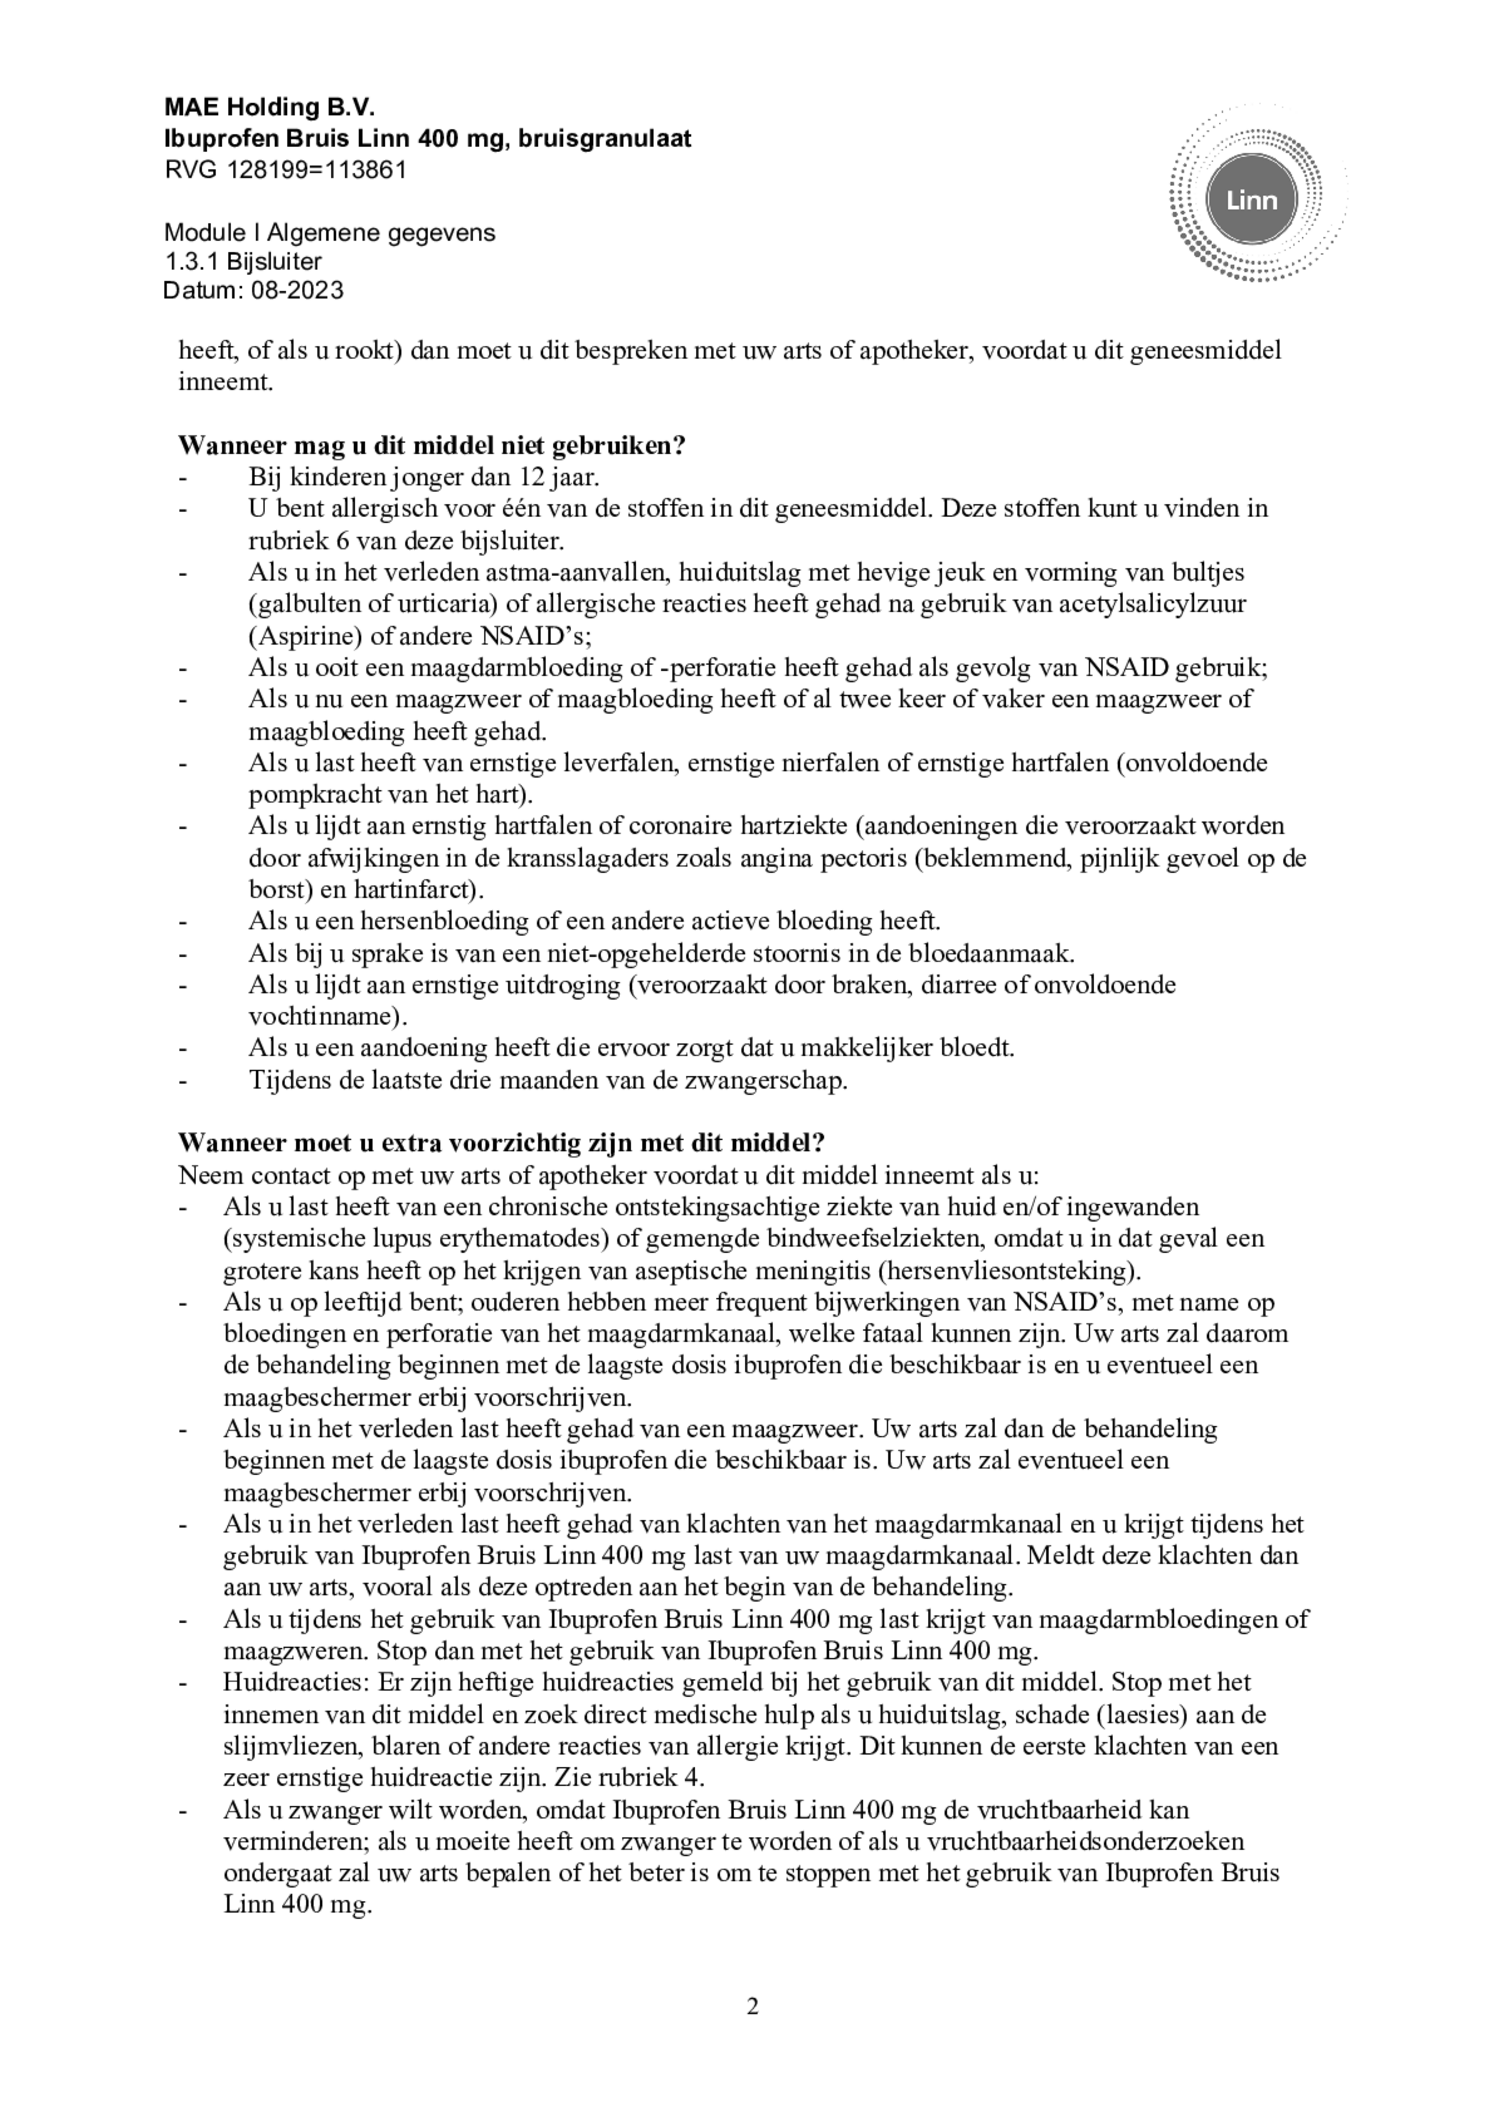 Ibuprofen Bruis Sachets 400mg afbeelding van document #2, bijsluiter